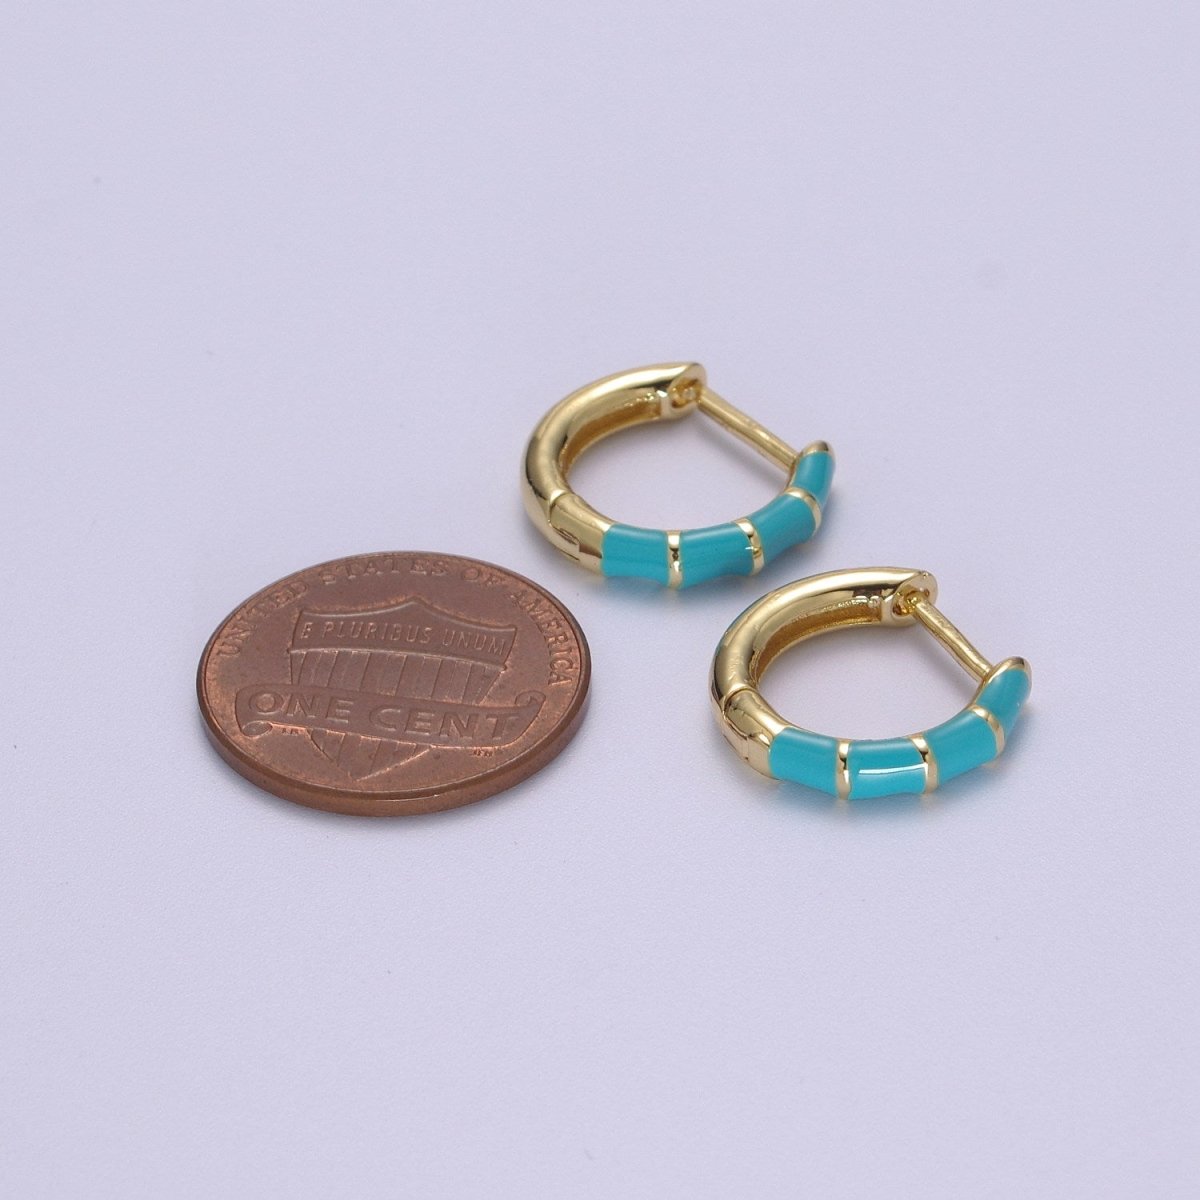 Dainty Huggie Earring Colorful Enamel Pastel Color Earring for Everyday wear 15mm earrings T-164 to T-174 - DLUXCA